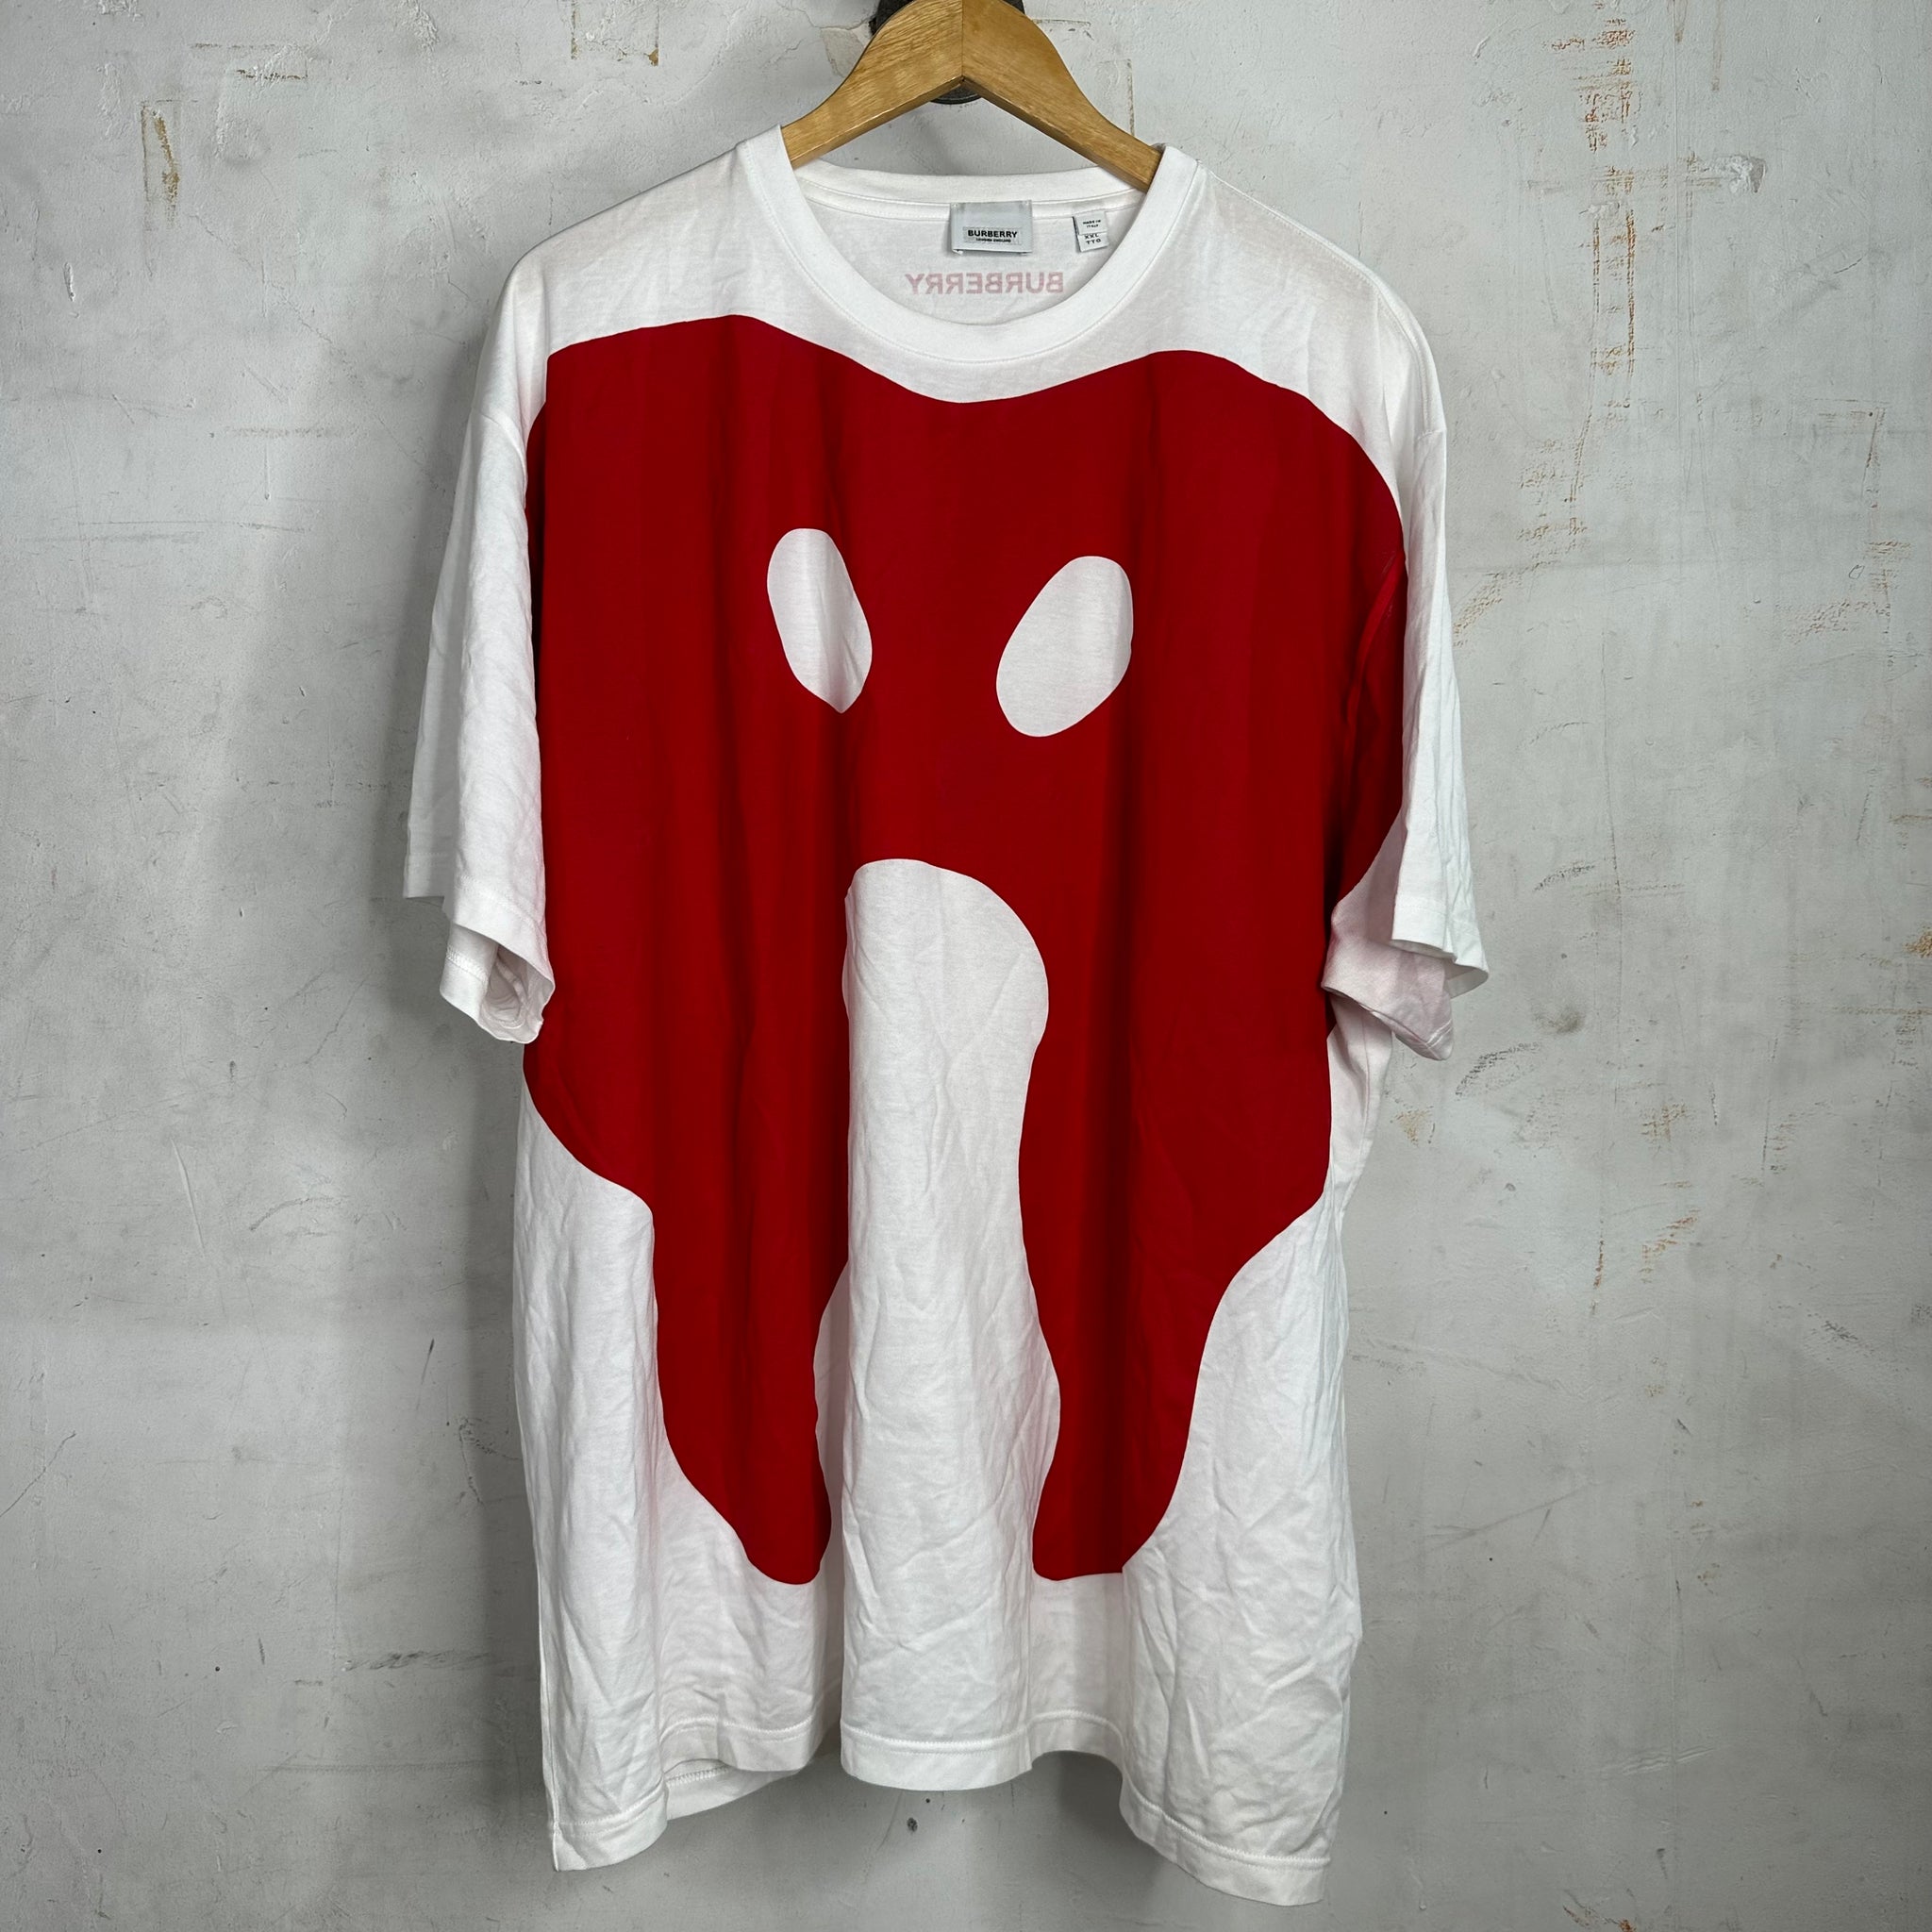 Burberry Rorschach Test T-shirt